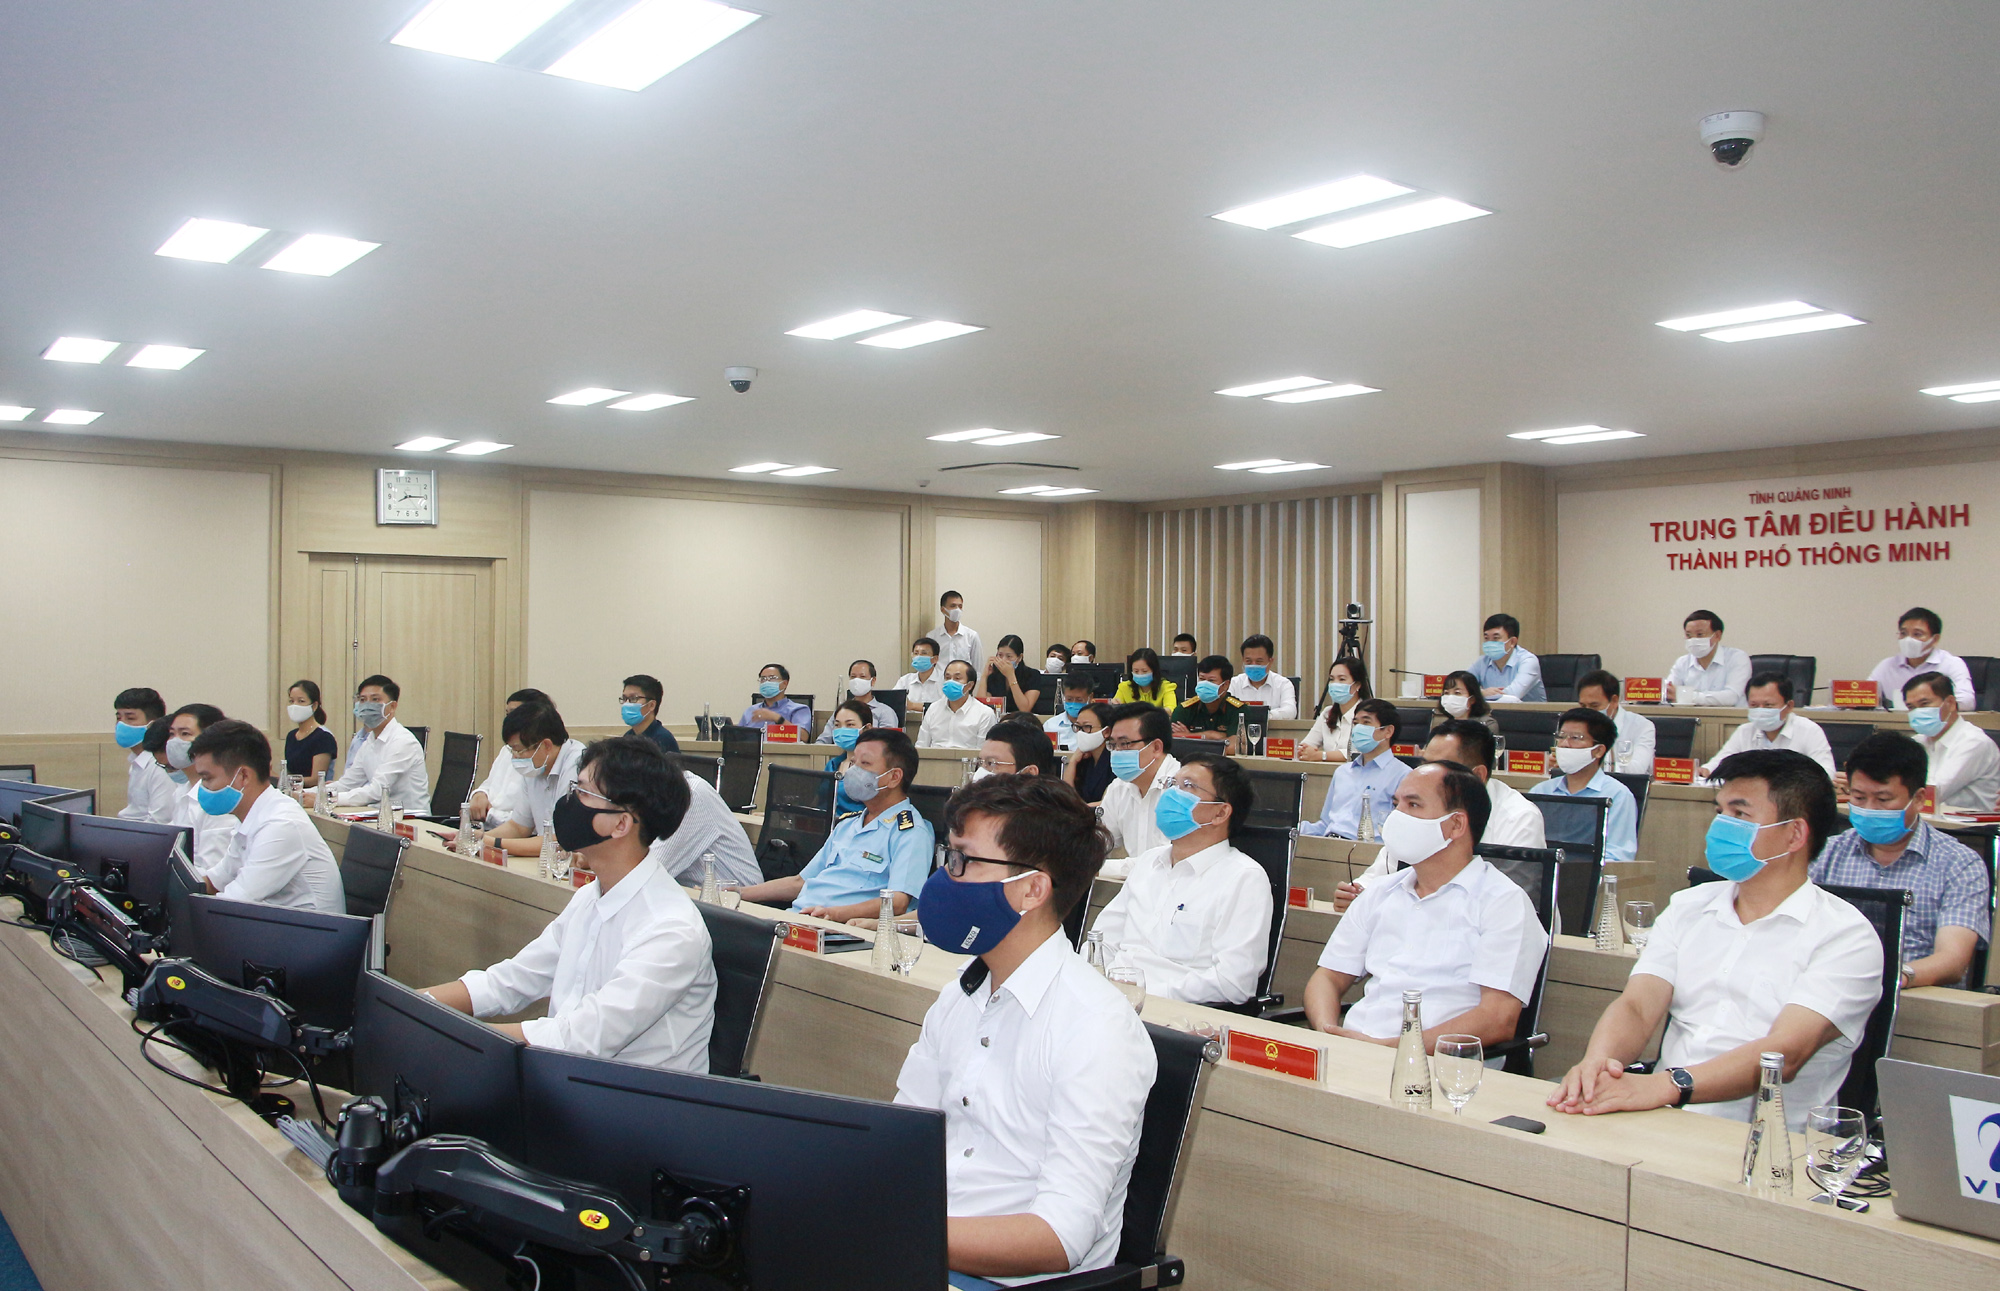 Các đại biểu tham gia tại Trung tâm điều hành thành phố thông minh tỉnh Quảng Ninh. Ảnh: Mạnh Trường